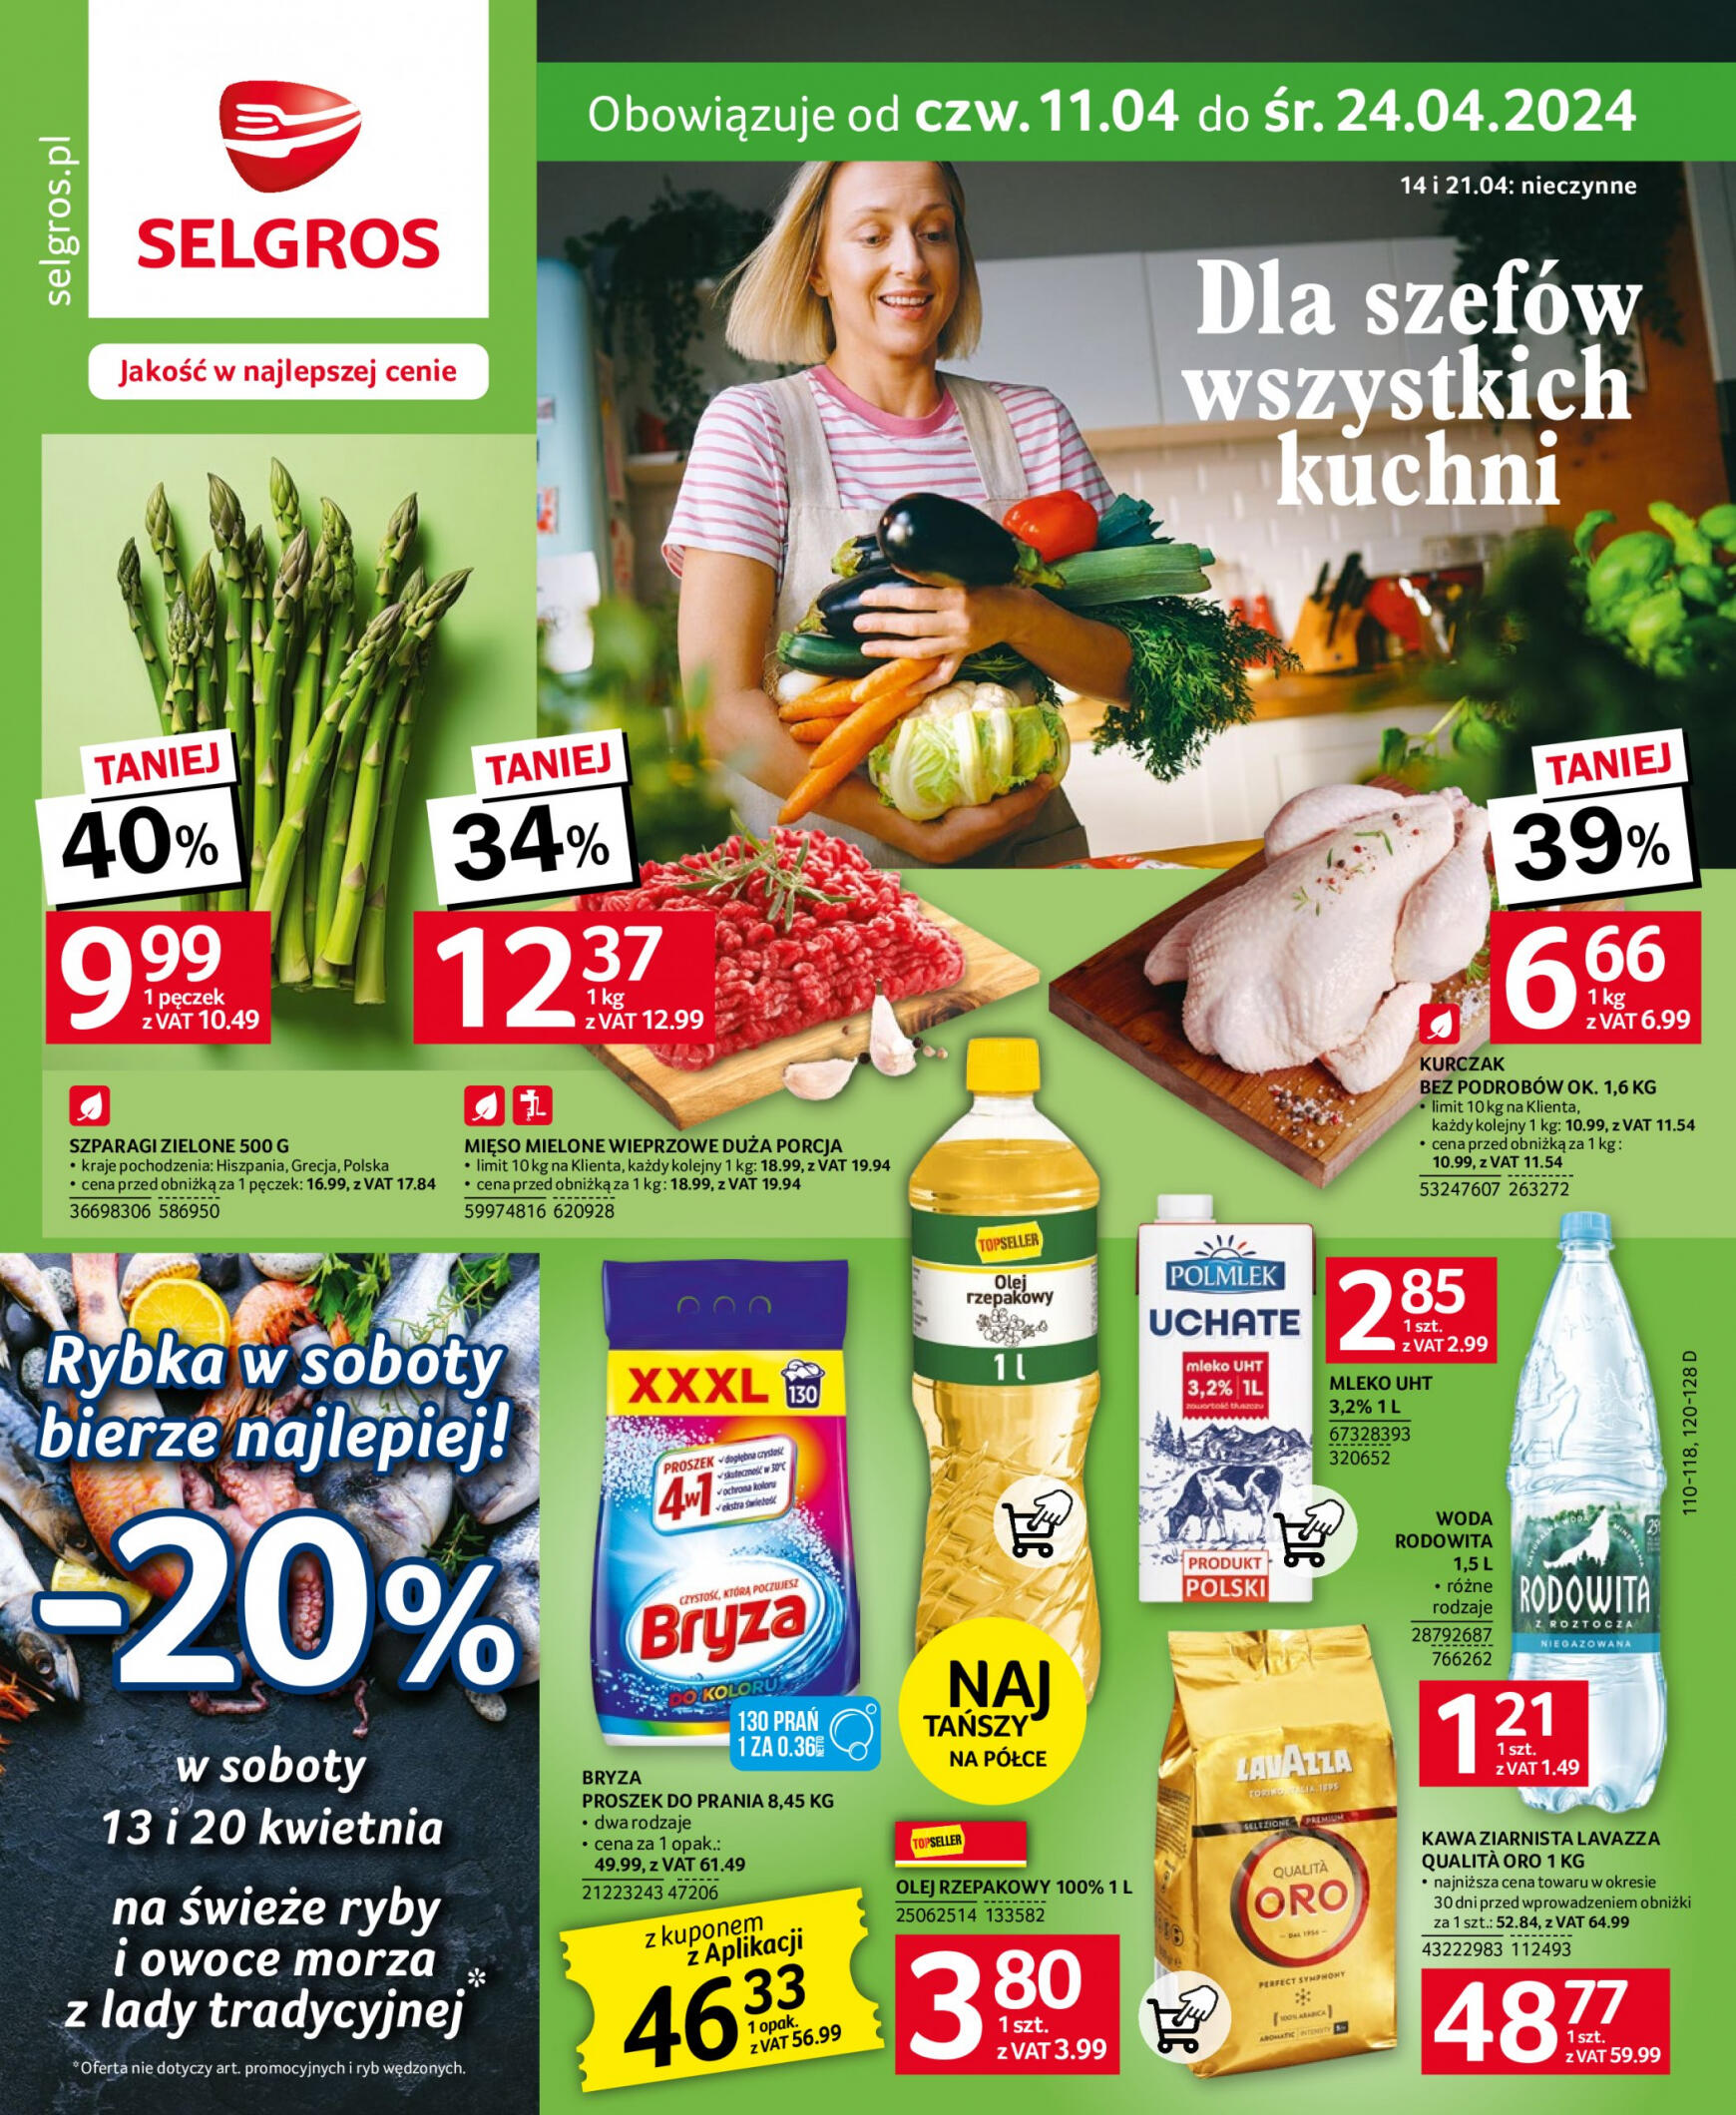 selgros - Selgros cash&carry - Selgros - Oferta spożywcza gazetka aktualna ważna od 11.04. - 24.04. - page: 1